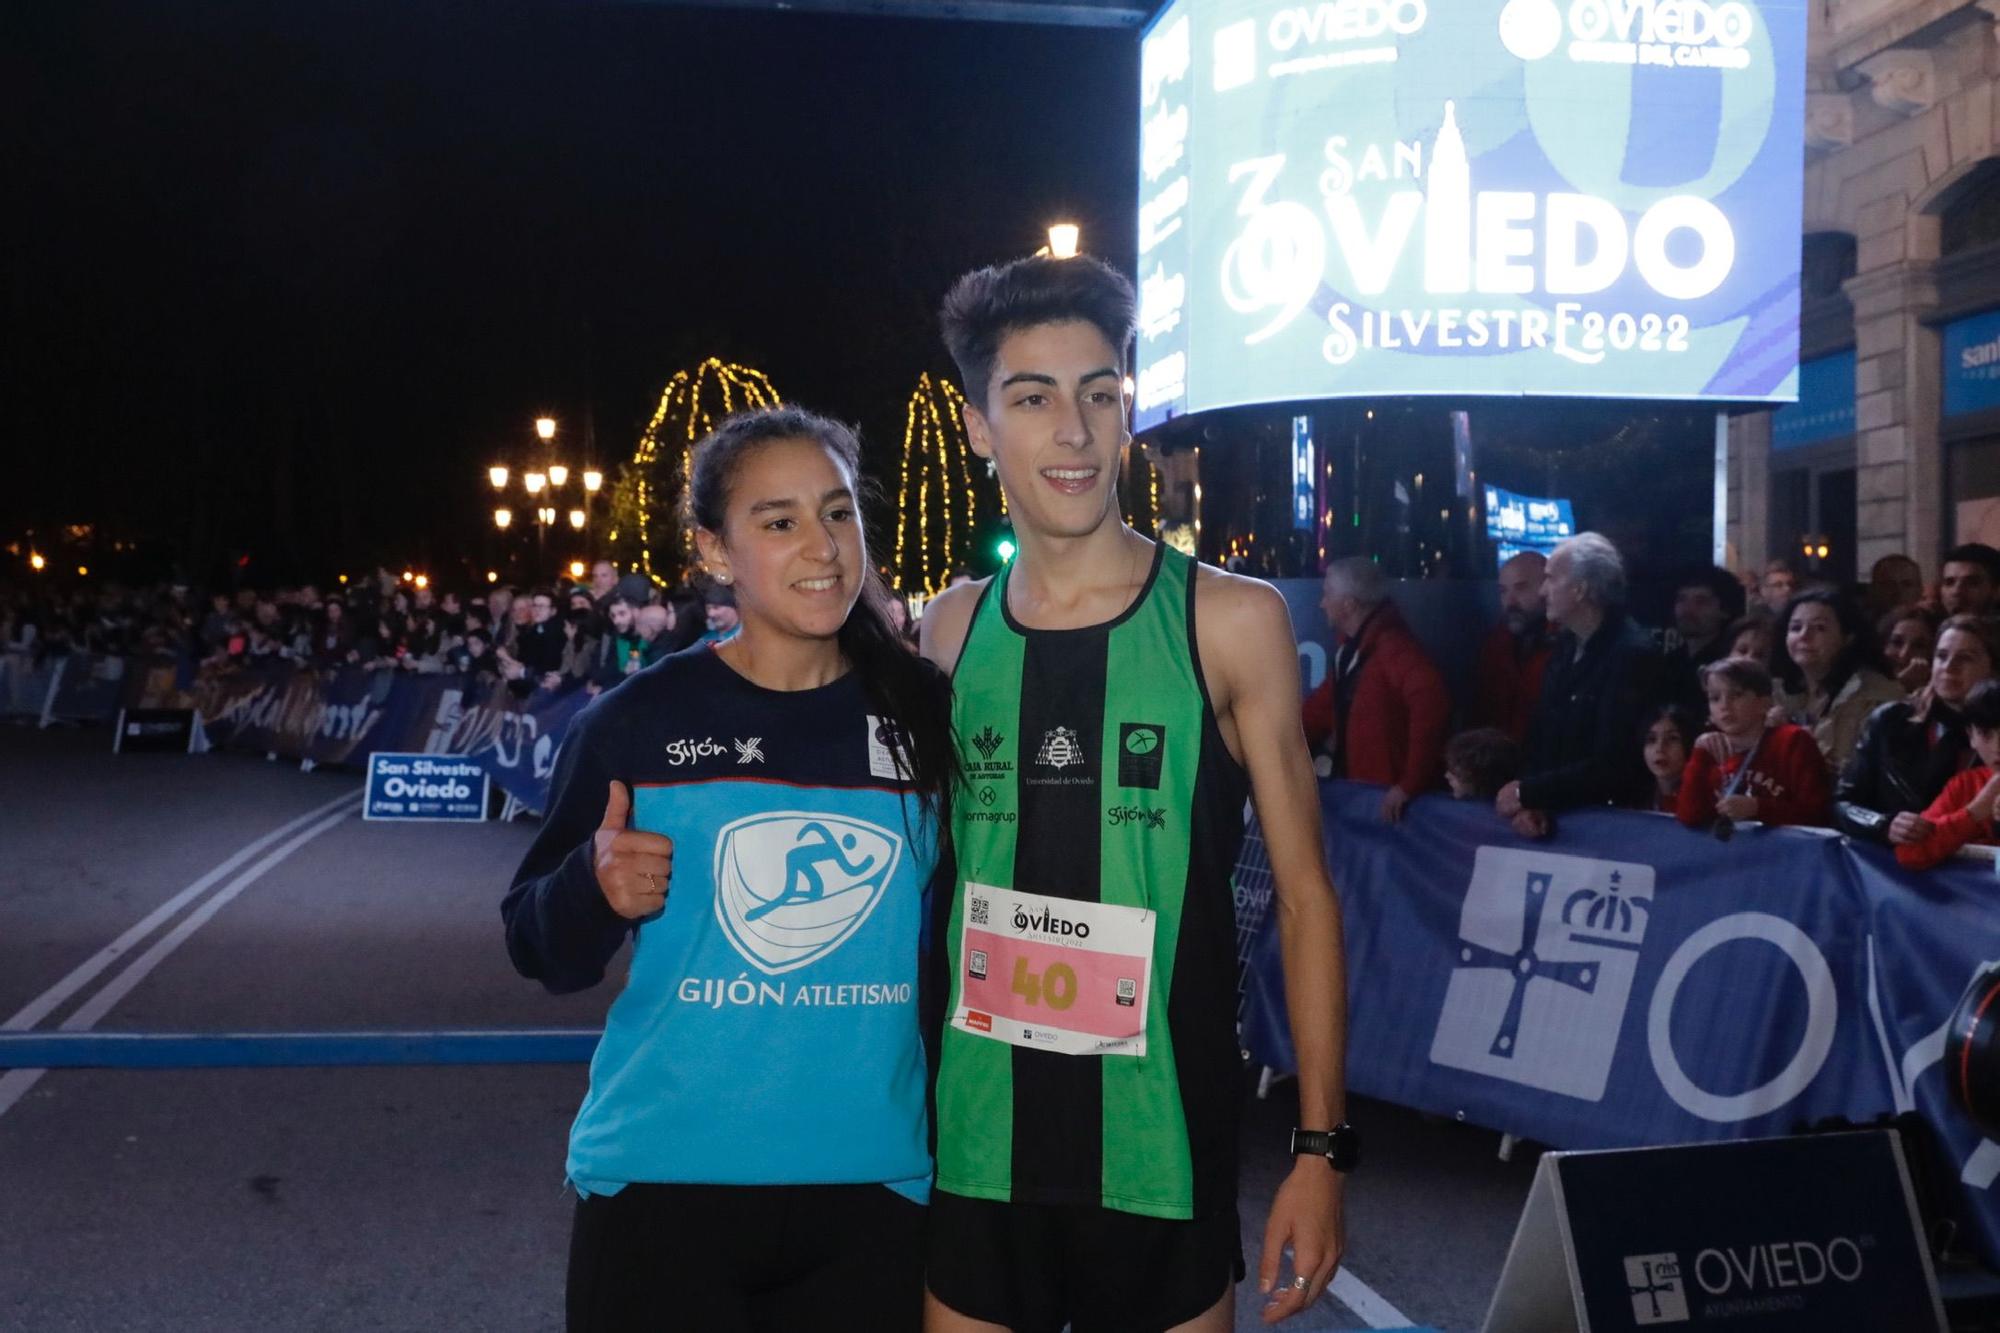 En imágenes: Jaime Bueno (Univerisad de Oviedo) y Mariam Benkert triunfan en la San Silvestre de Oviedo